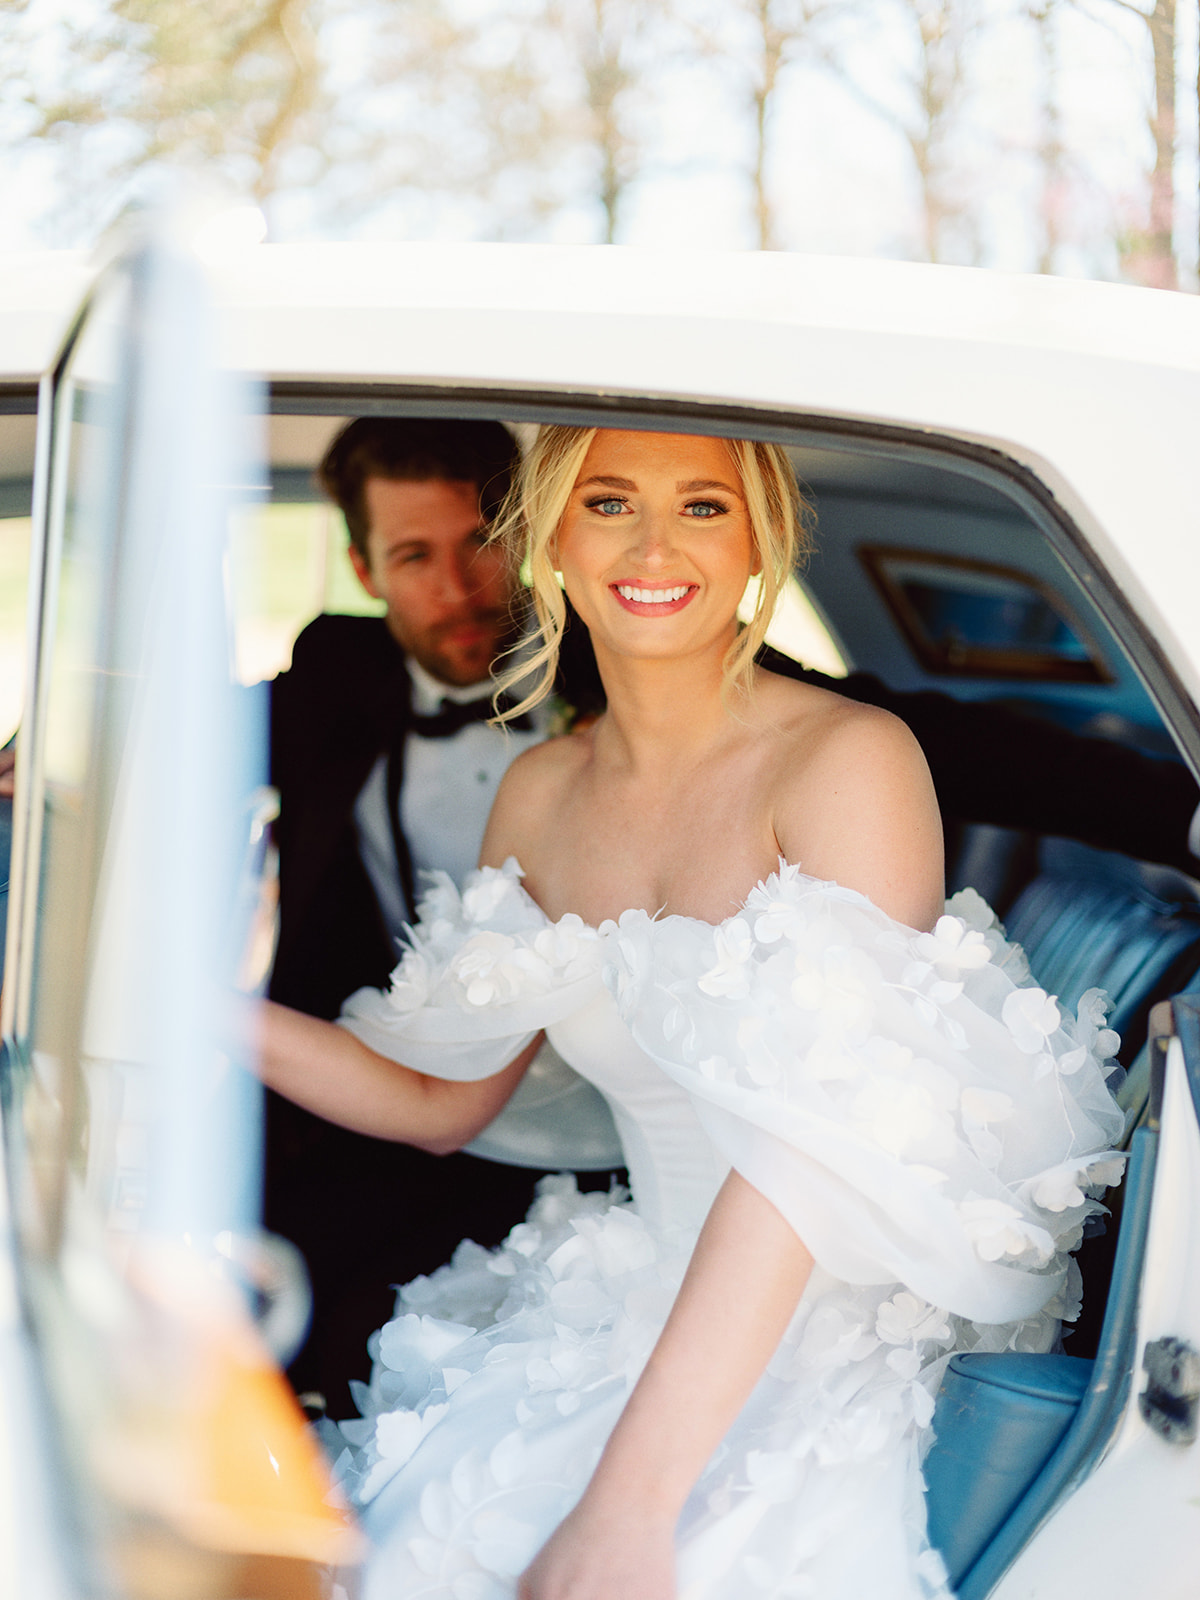 Bride sitting in classic rolls-royce car